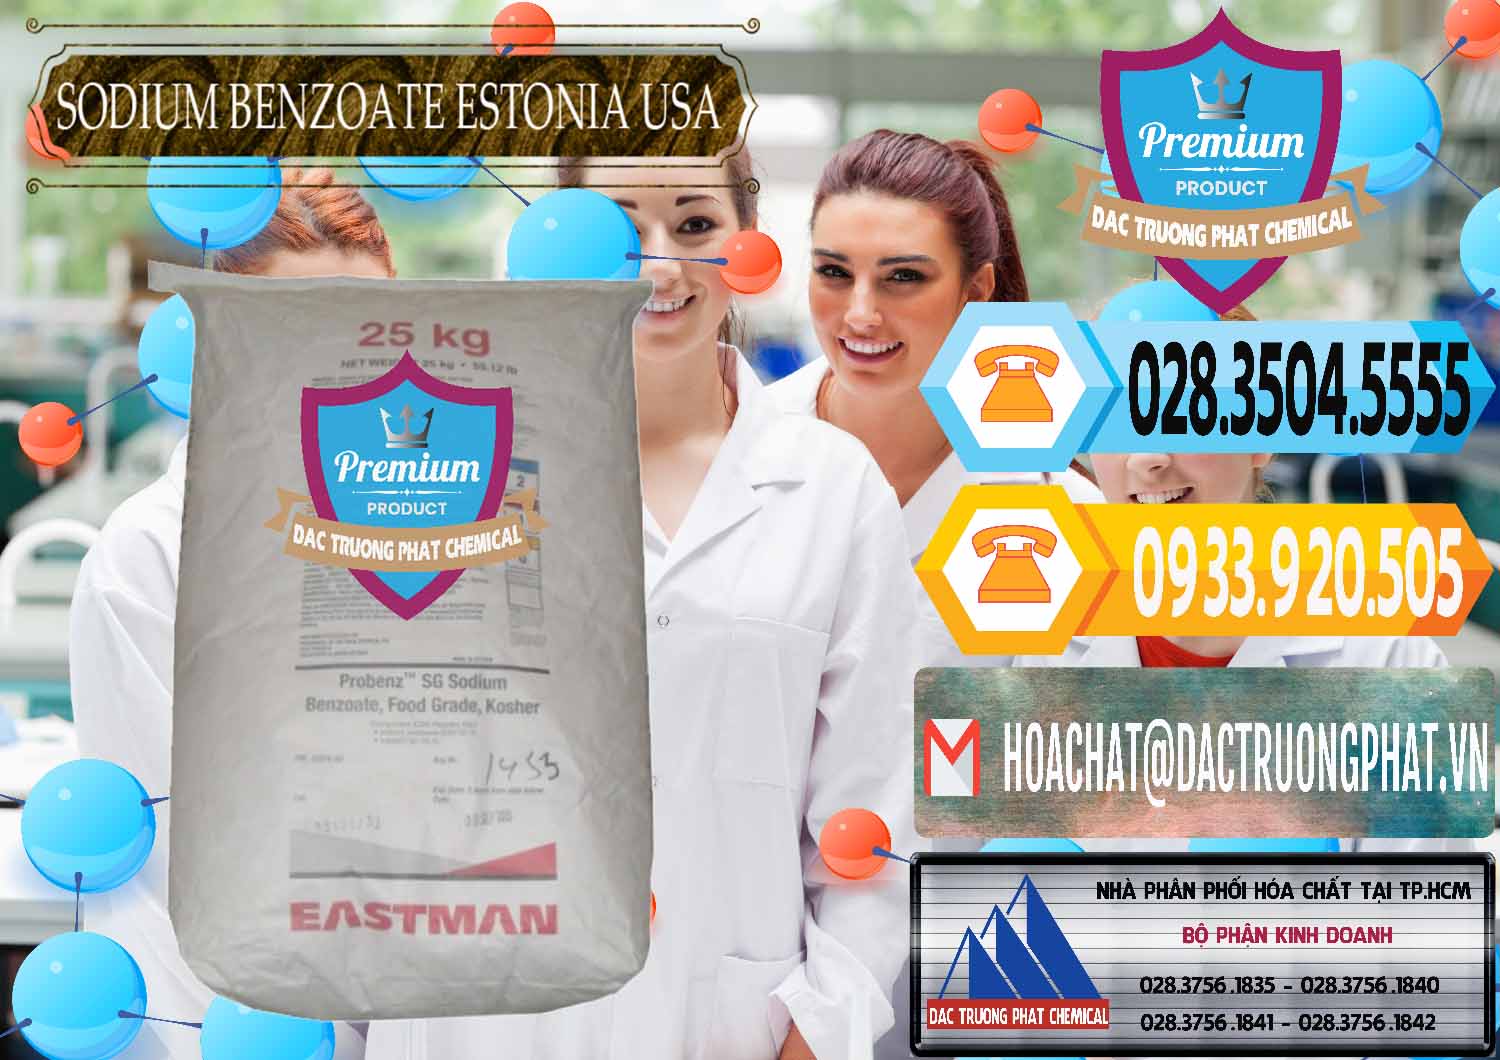 Bán ( phân phối ) Sodium Benzoate - Mốc Bột Estonia Mỹ USA - 0468 - Cty kinh doanh và phân phối hóa chất tại TP.HCM - hoachattayrua.net